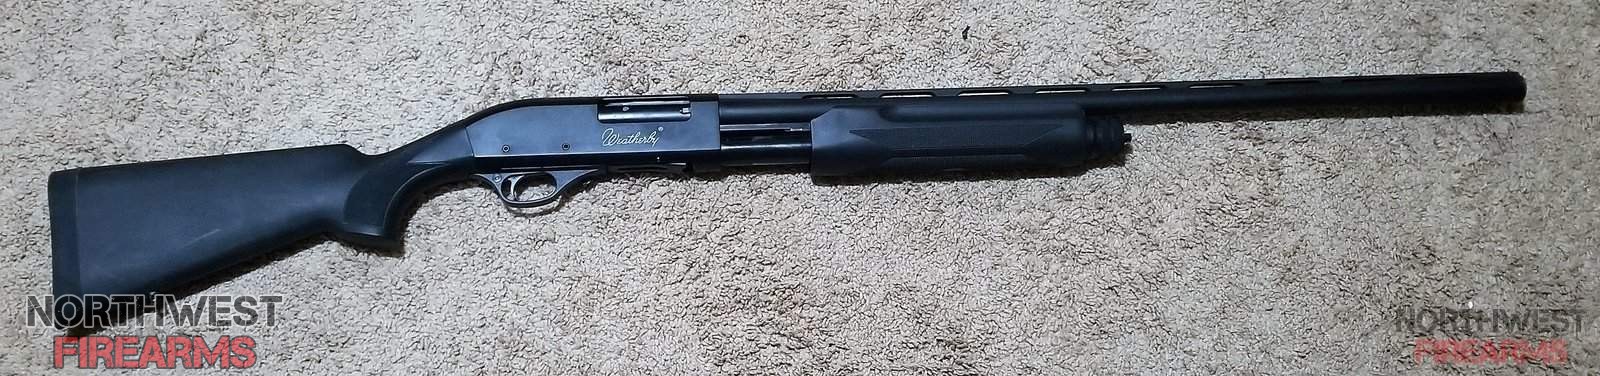 Weatherby PA-08 Shotgun